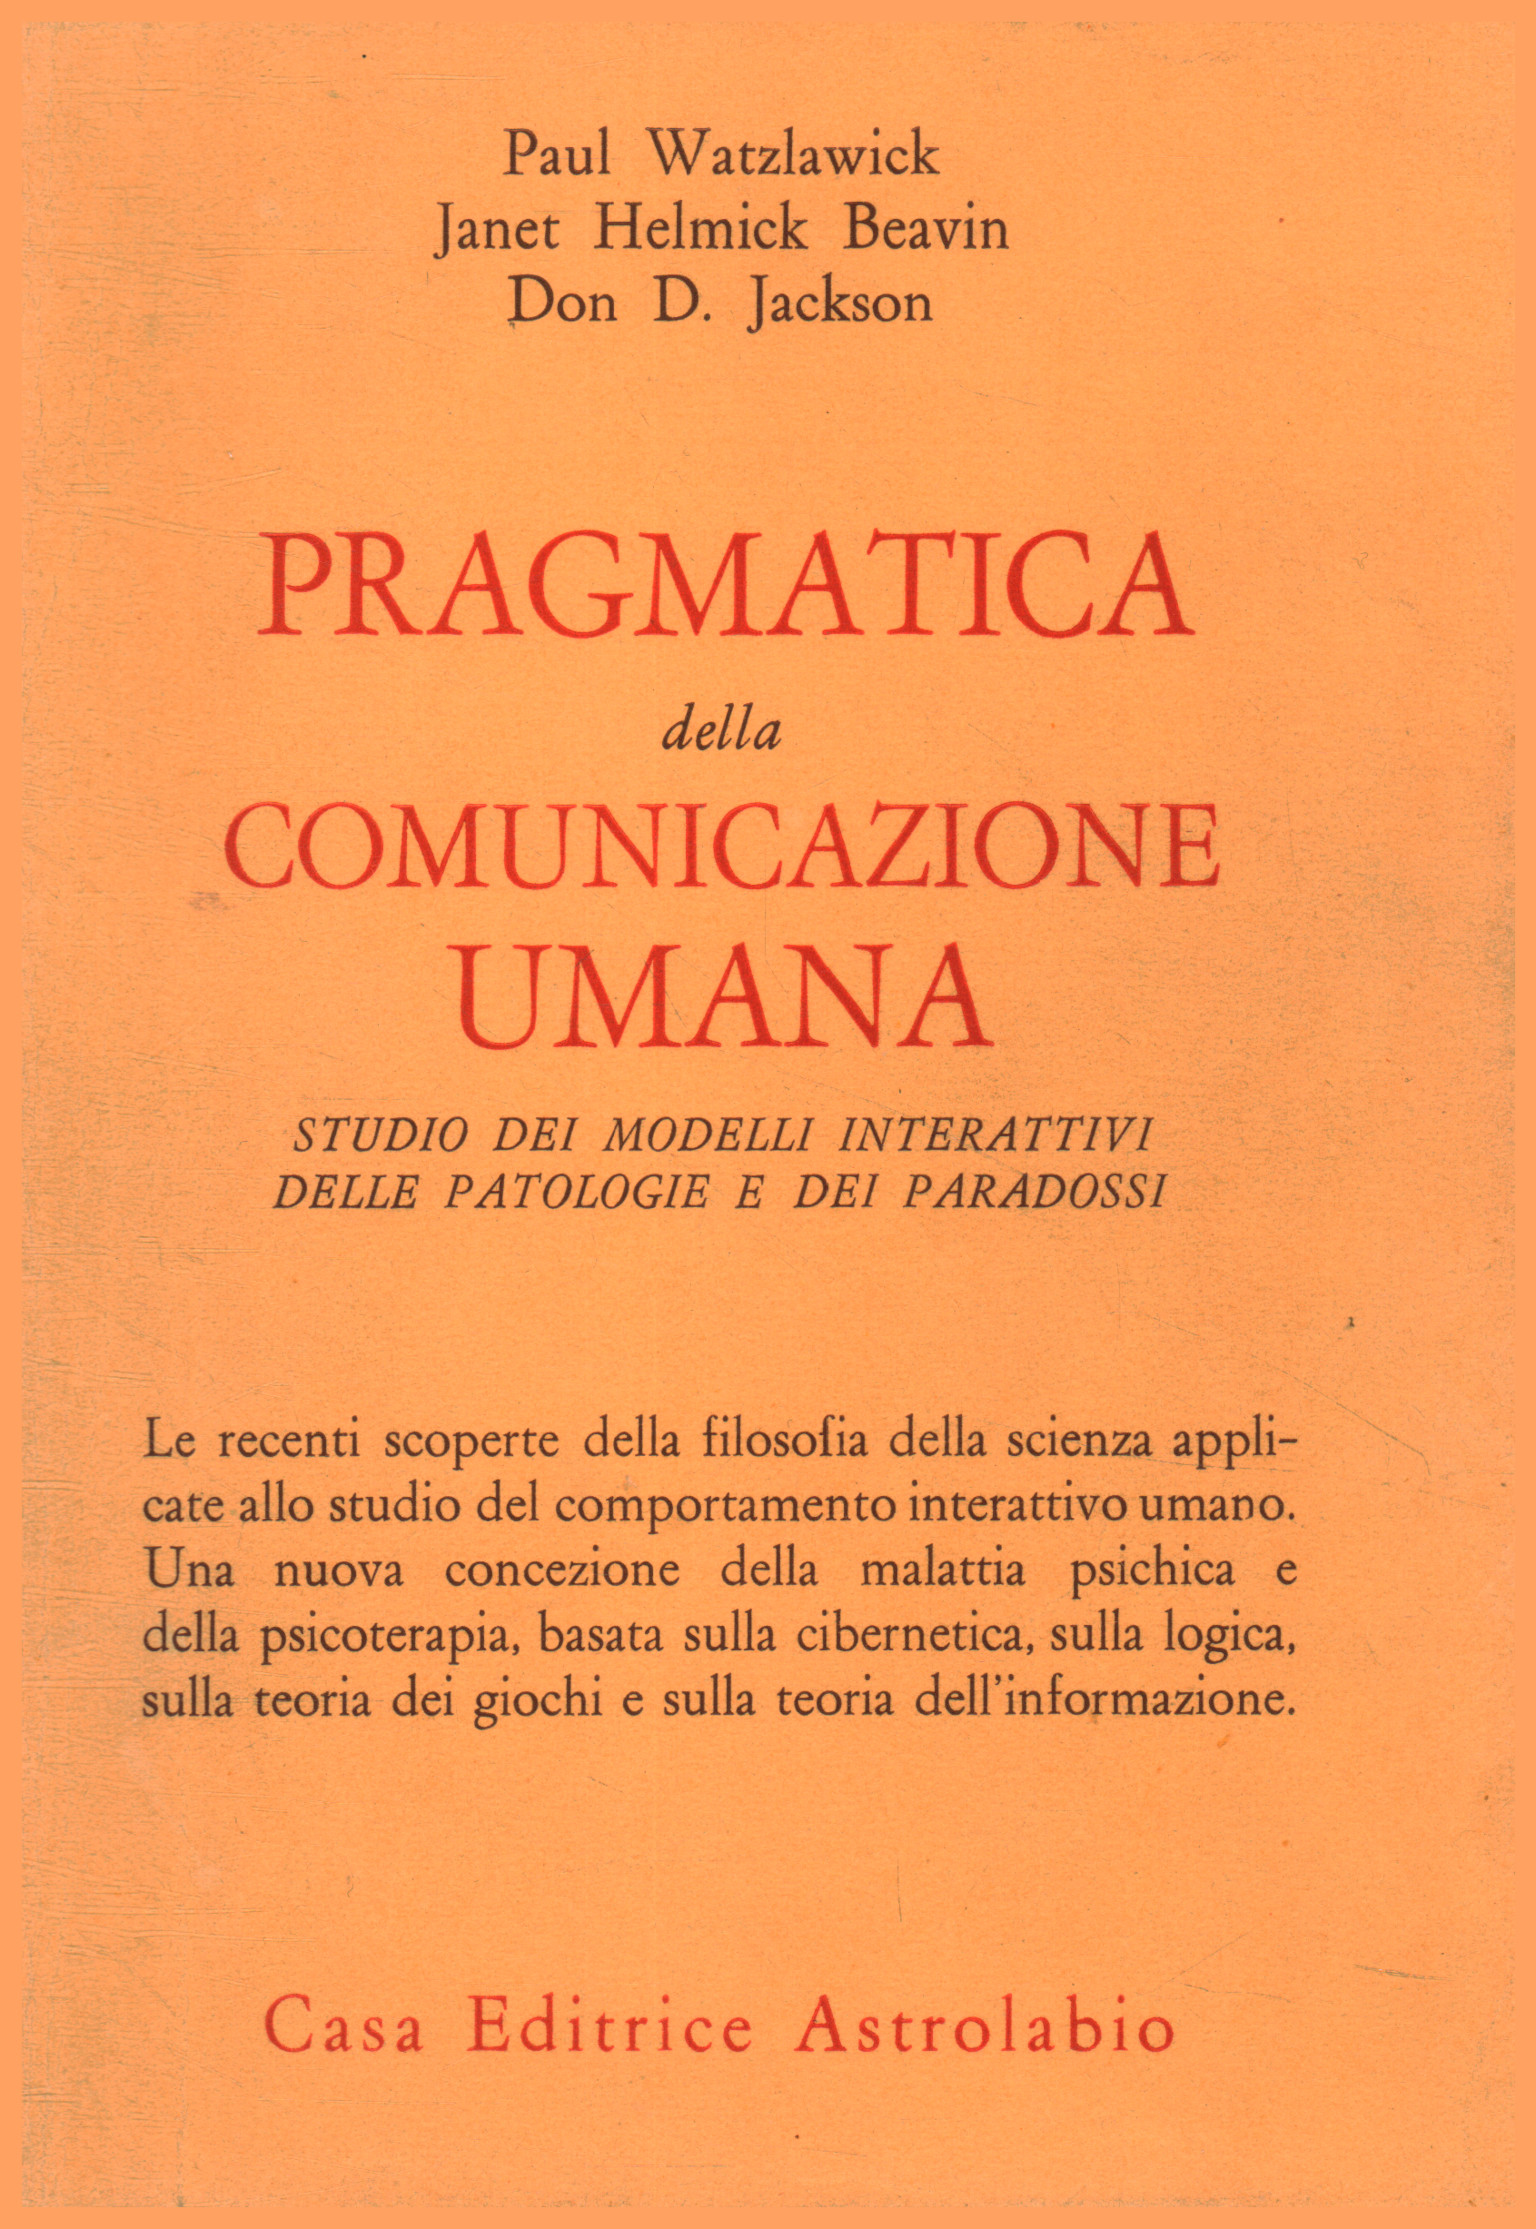 Pragmatik menschlicher Kommunikation